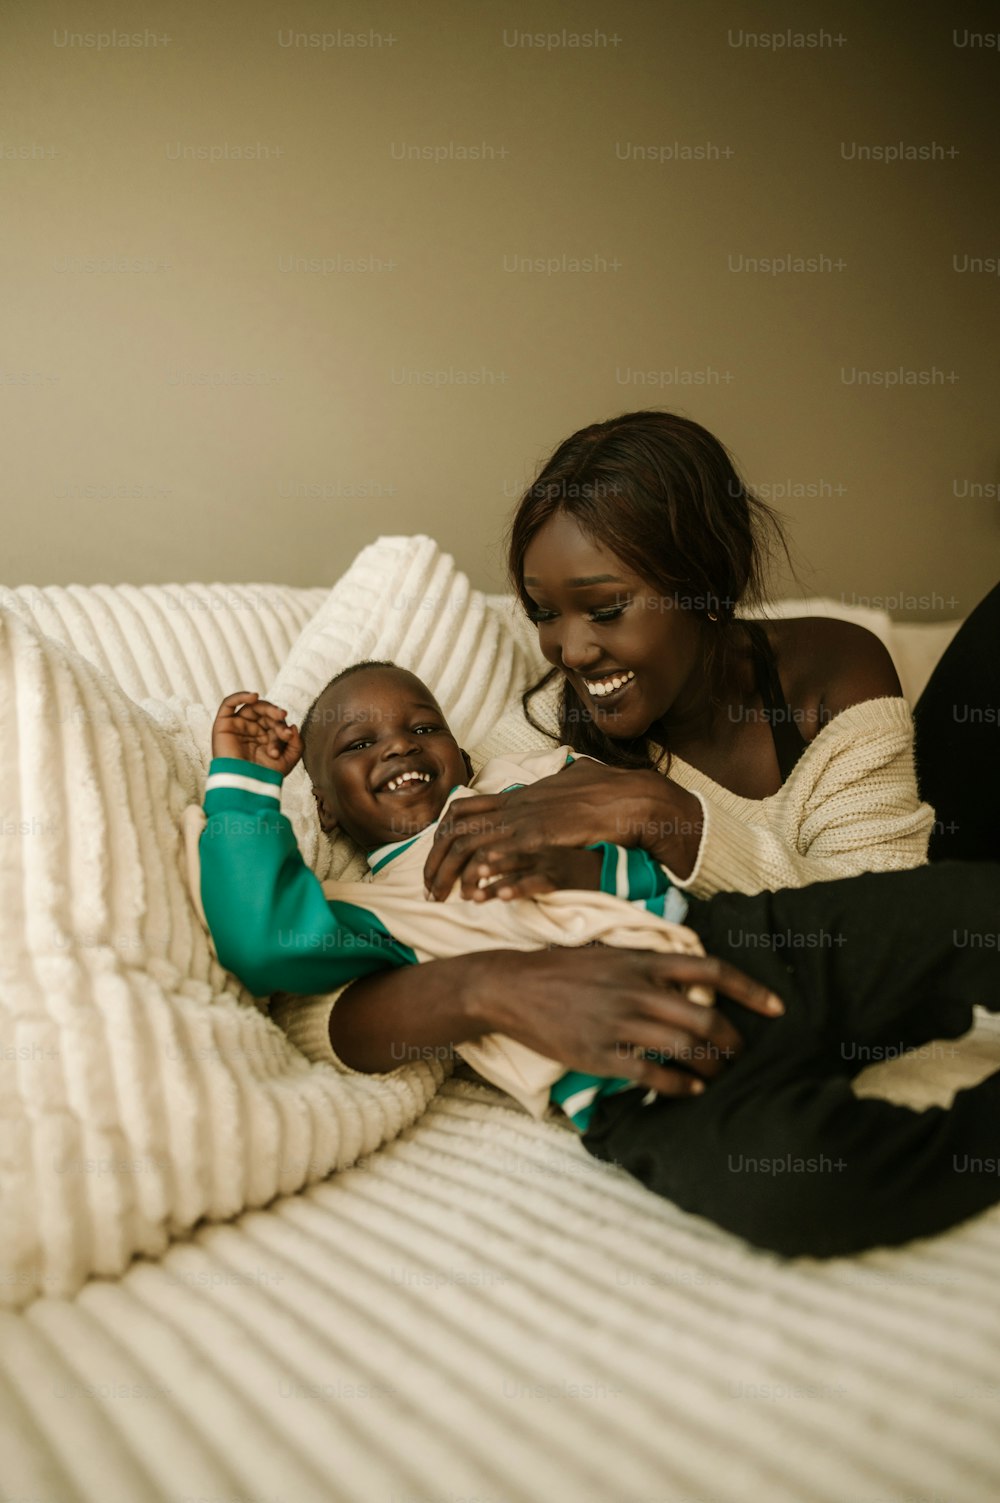 Una mujer sosteniendo a un niño encima de una cama